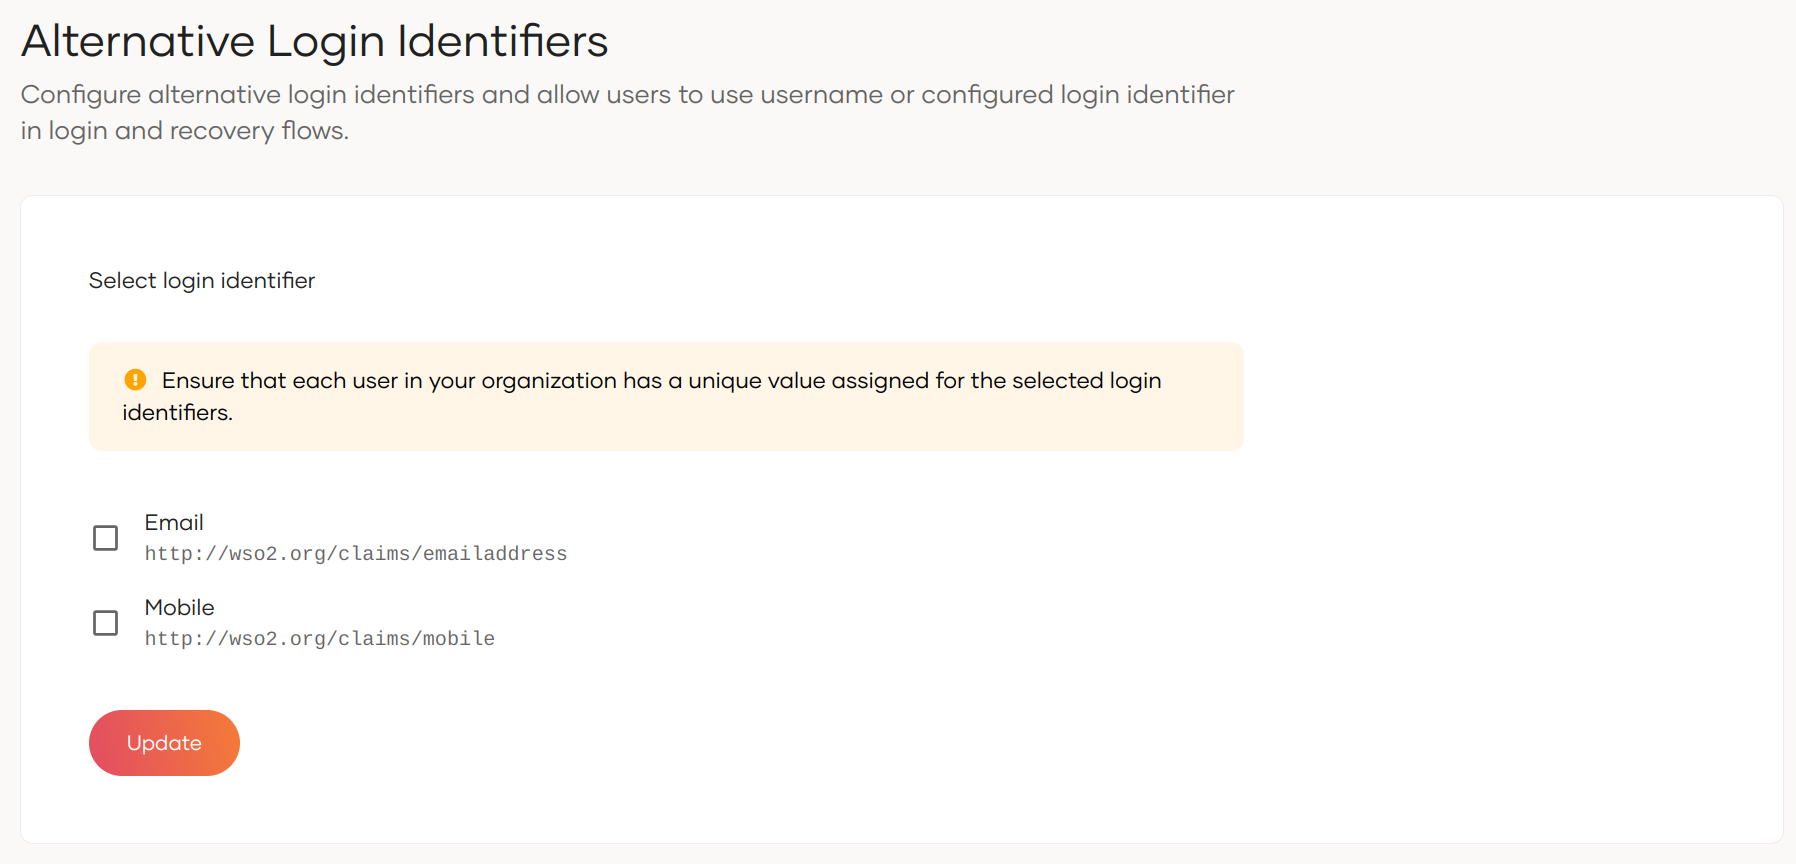 Configure alternative login identifiers